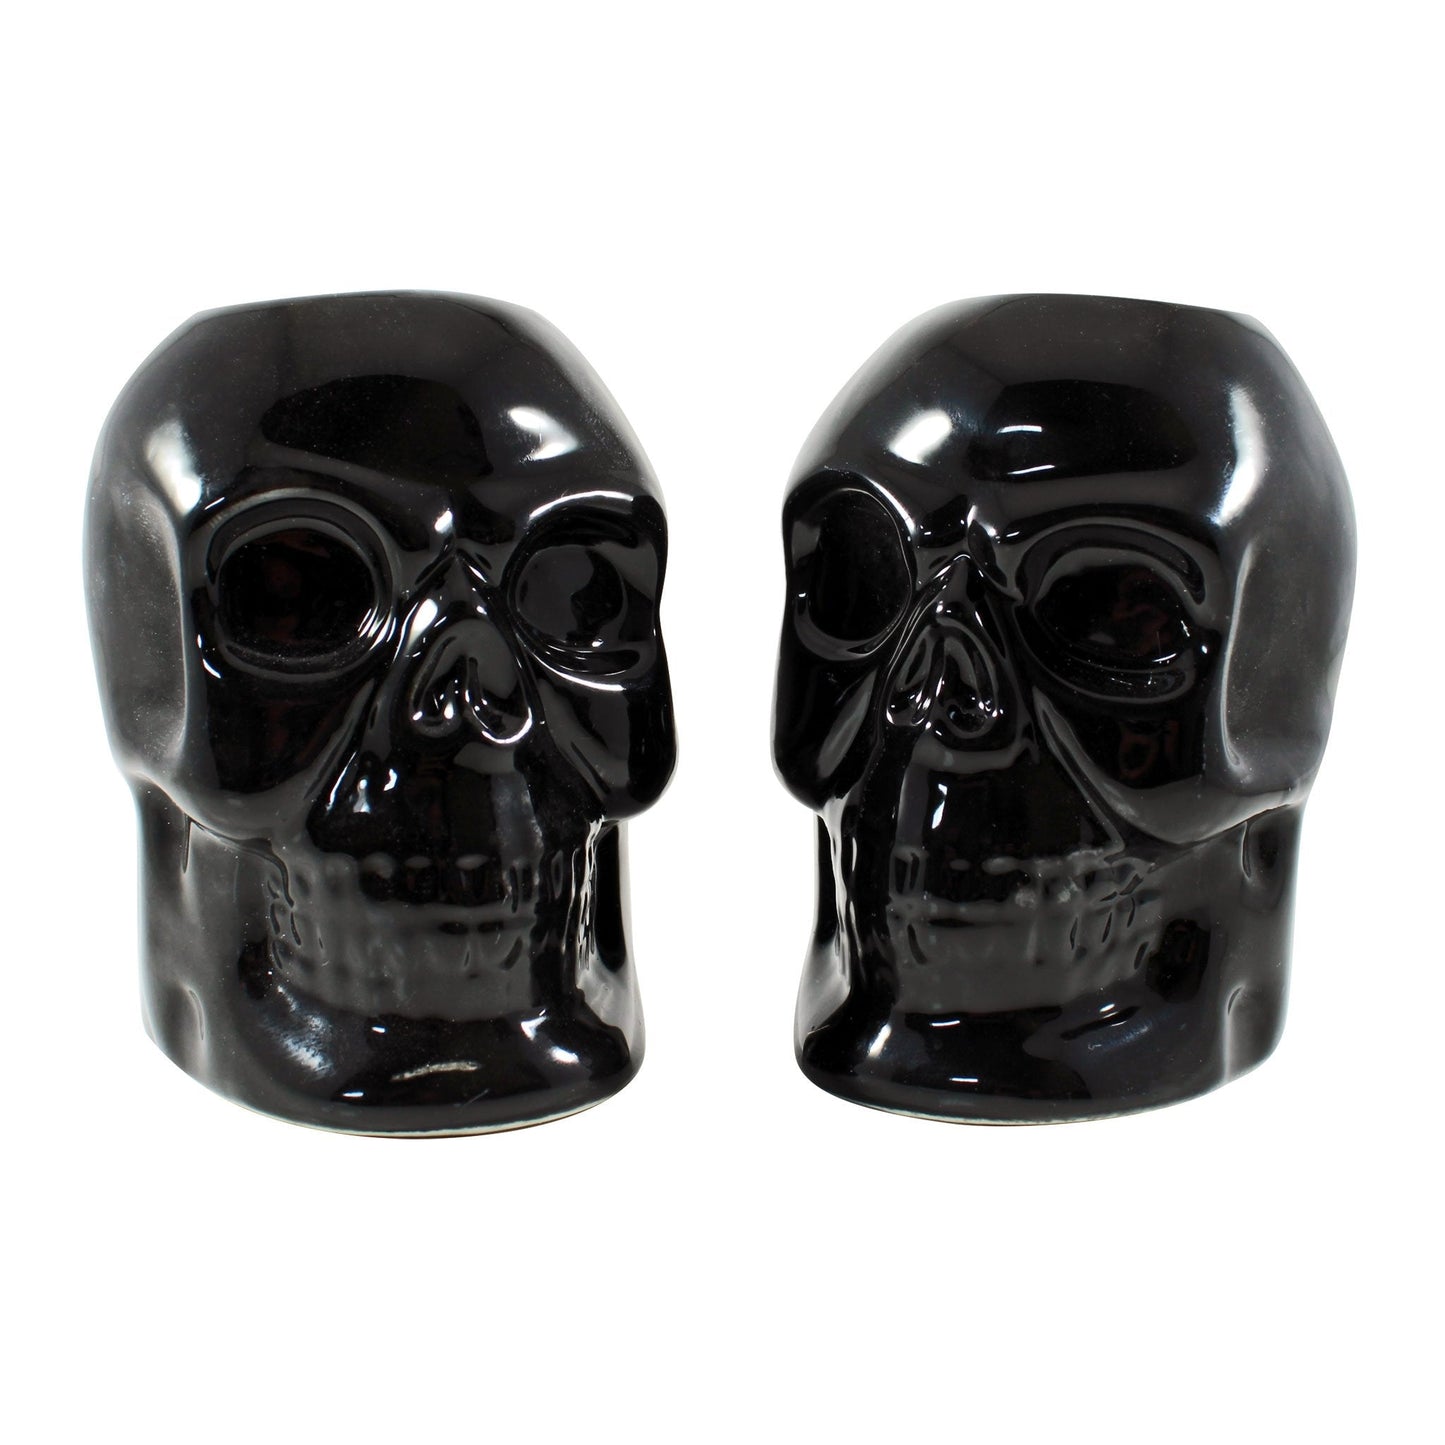 Black Skull candlestick holders